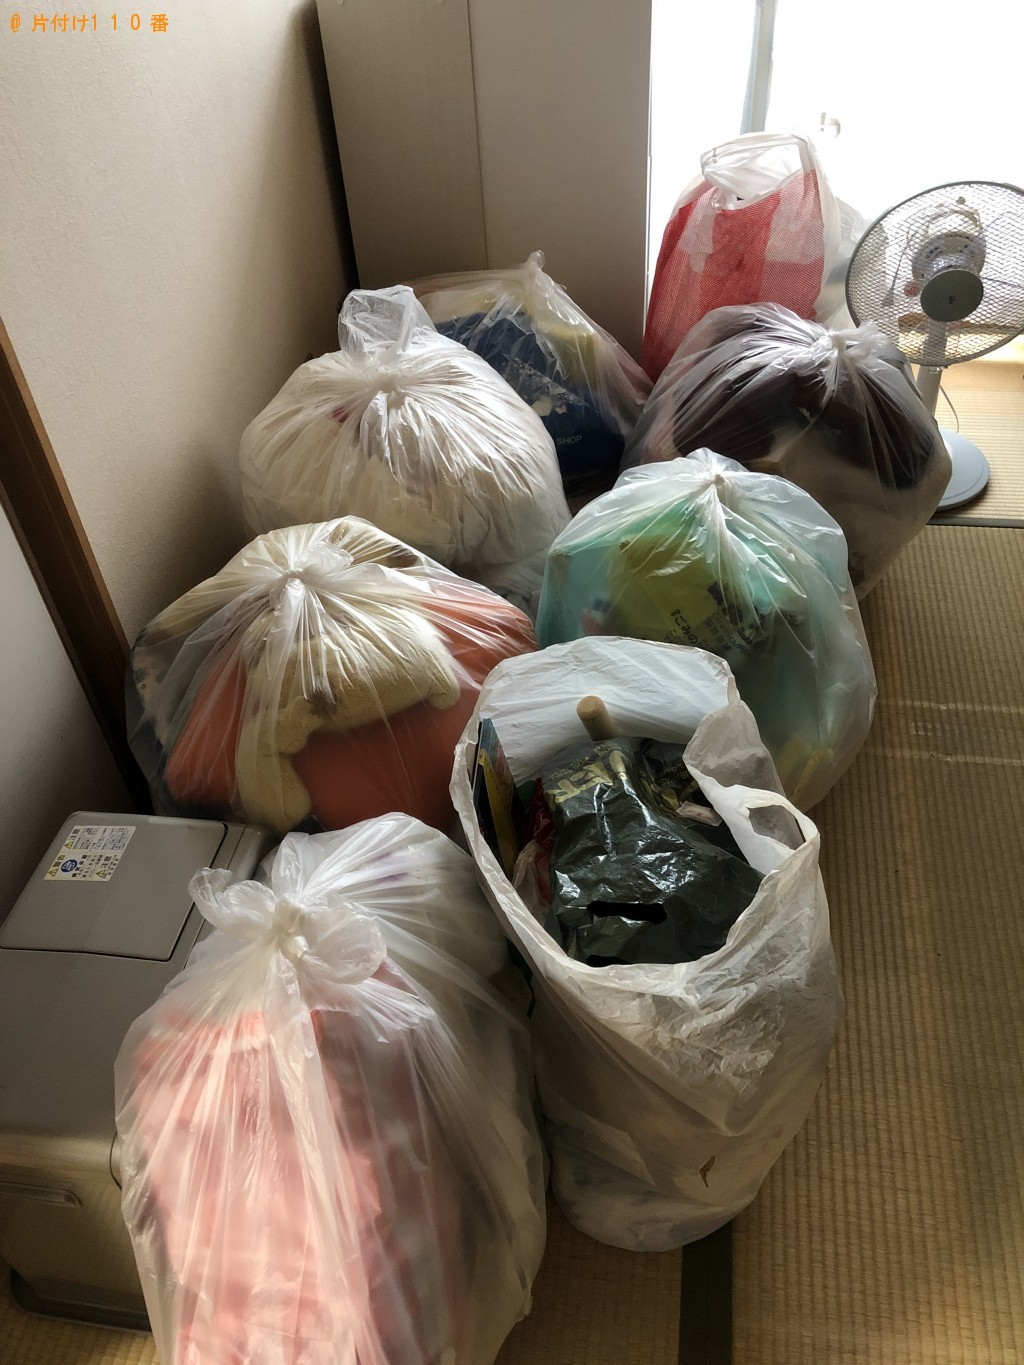 【栗東市】ダブルベッド、鞄、分別なし衣類の回収・処分ご依頼